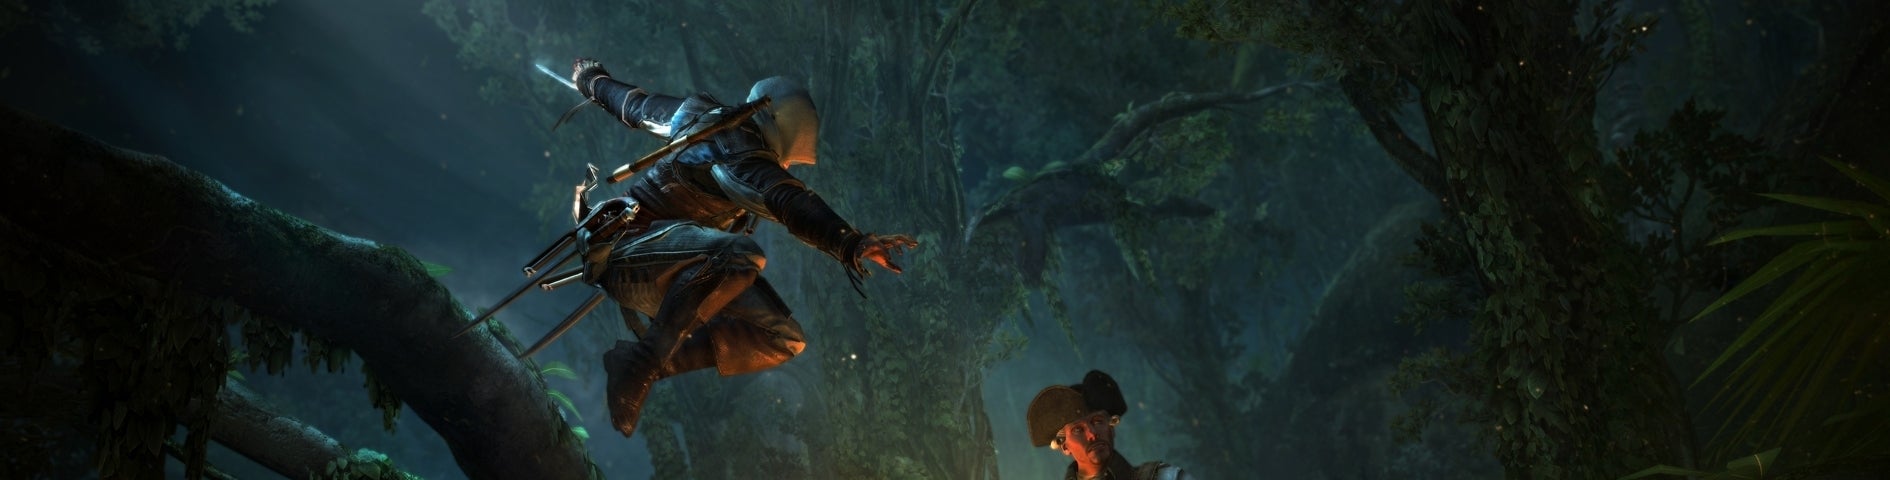 Afbeeldingen van Assassin's Creed IV Black Flag toont nieuwe features